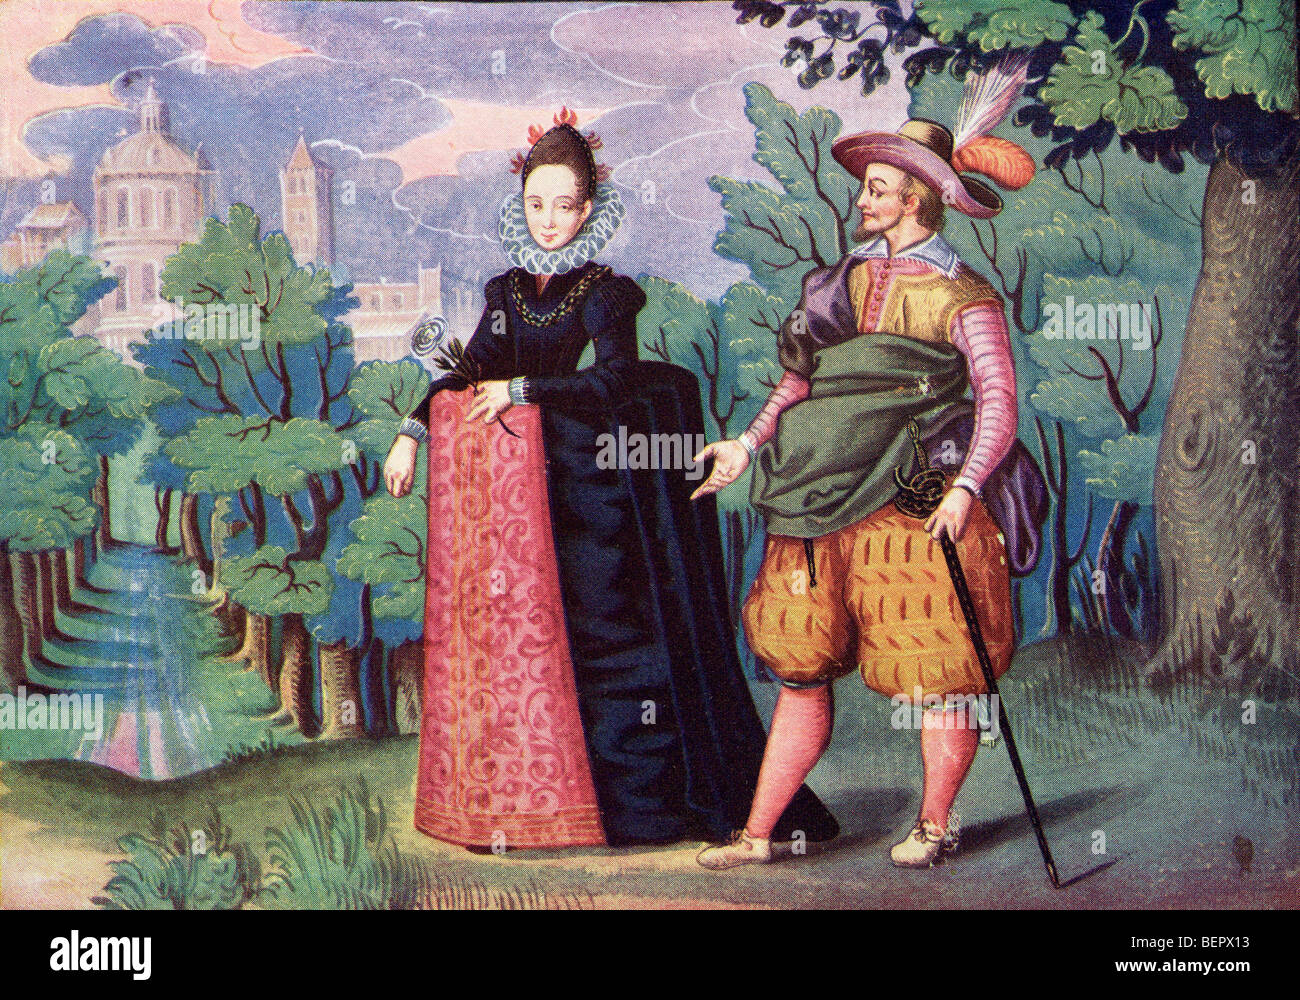 La reine Elizabeth et Sir Walter Raleigh. Illustration couleur à partir de l'Illustrated London News, numéro de Noël, 1933. Banque D'Images